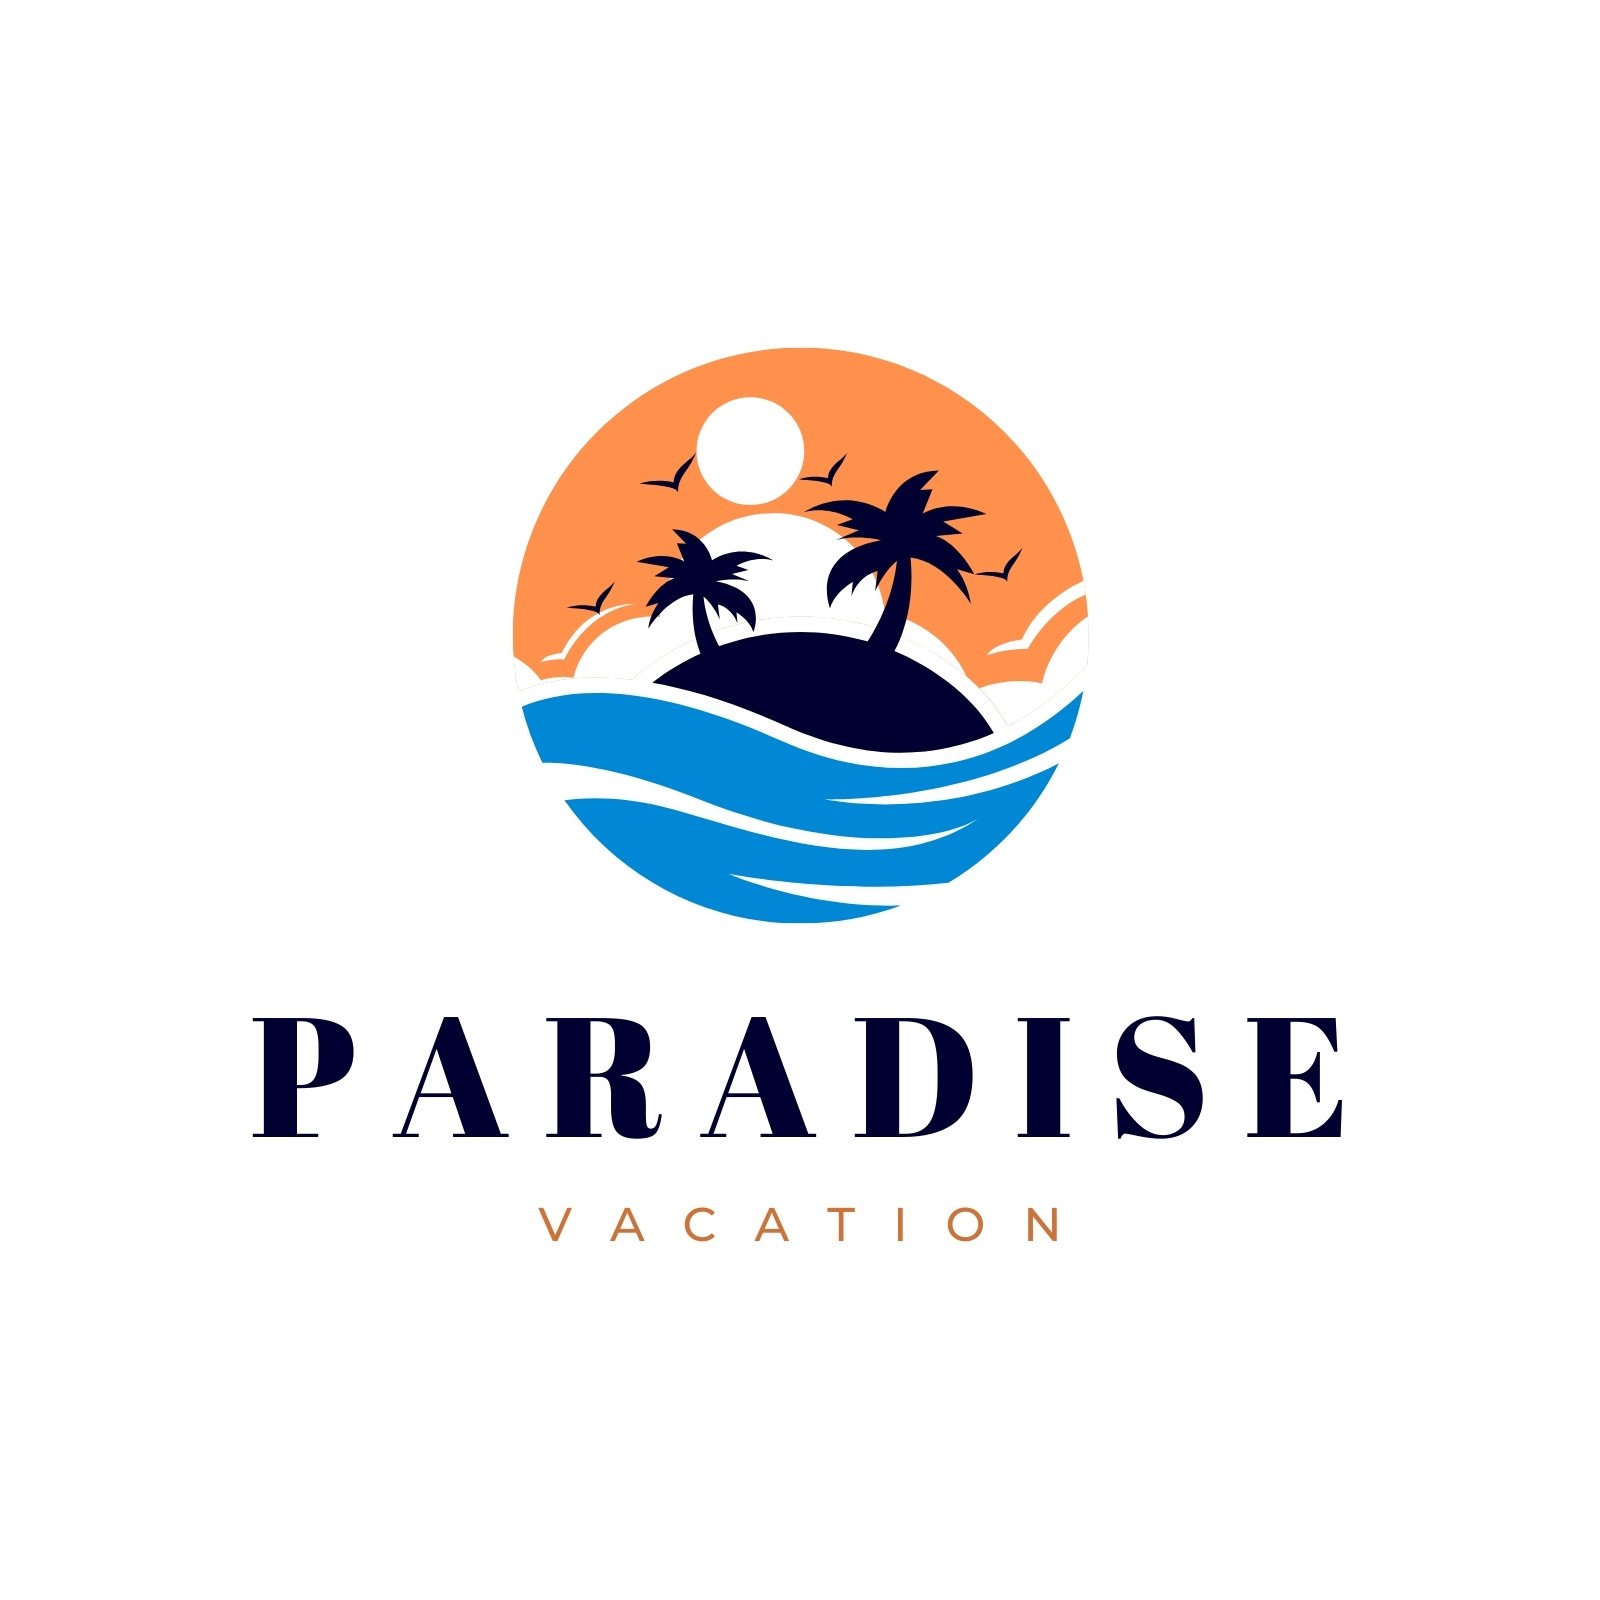 Sunset Paradise logo by Jeageruzumaki on DeviantArt